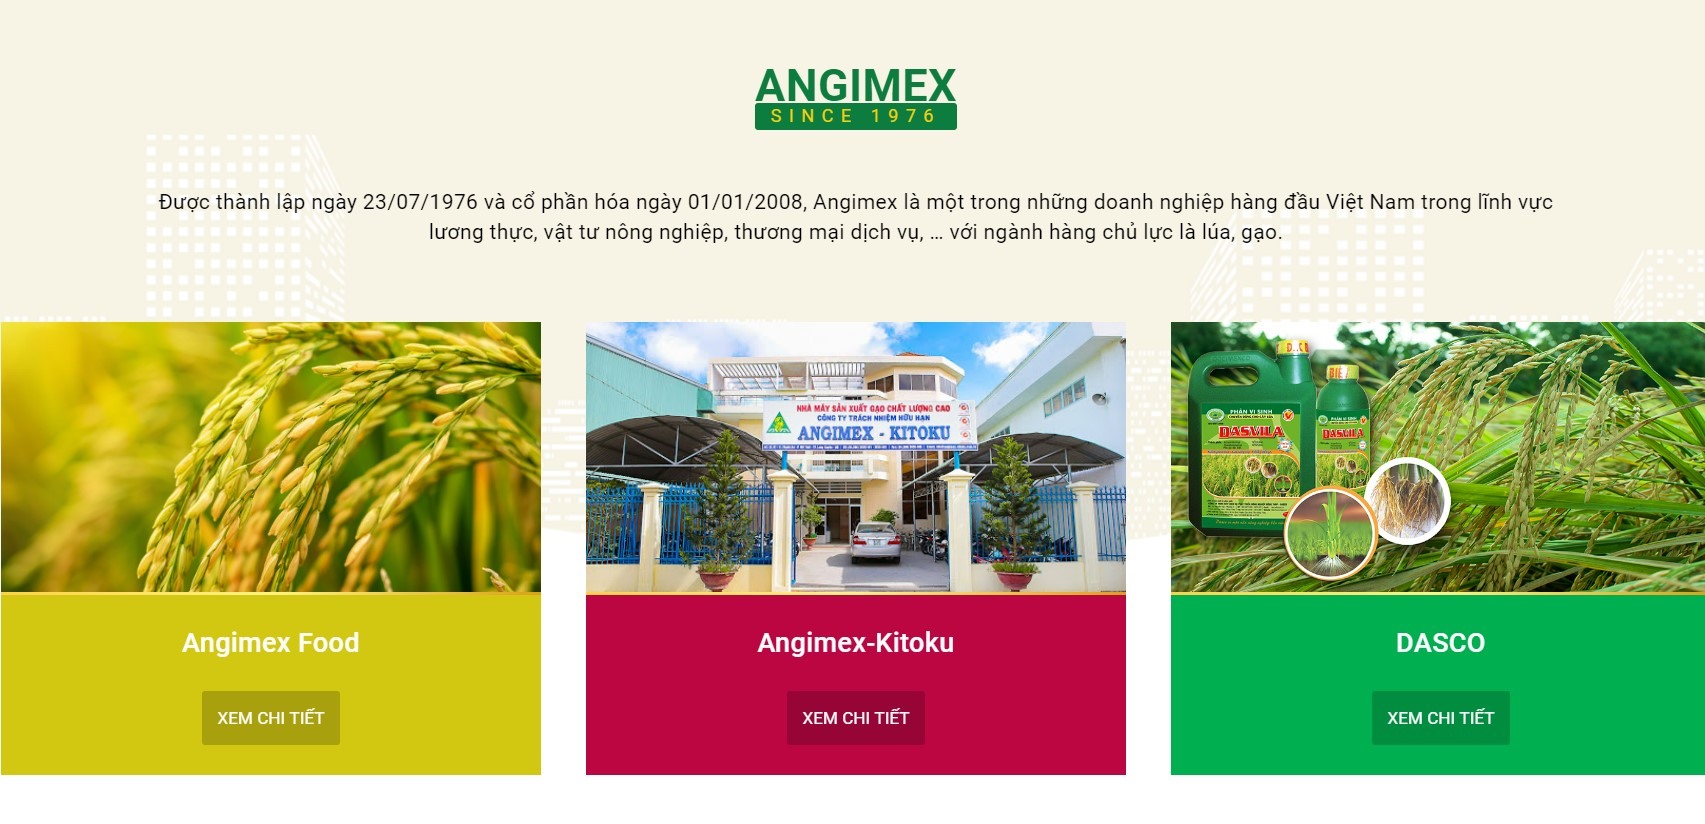 Angimex là doanh nghiệp đang hoạt động trong rất nhiều lĩnh vực. Ảnh: Chụp màn hình